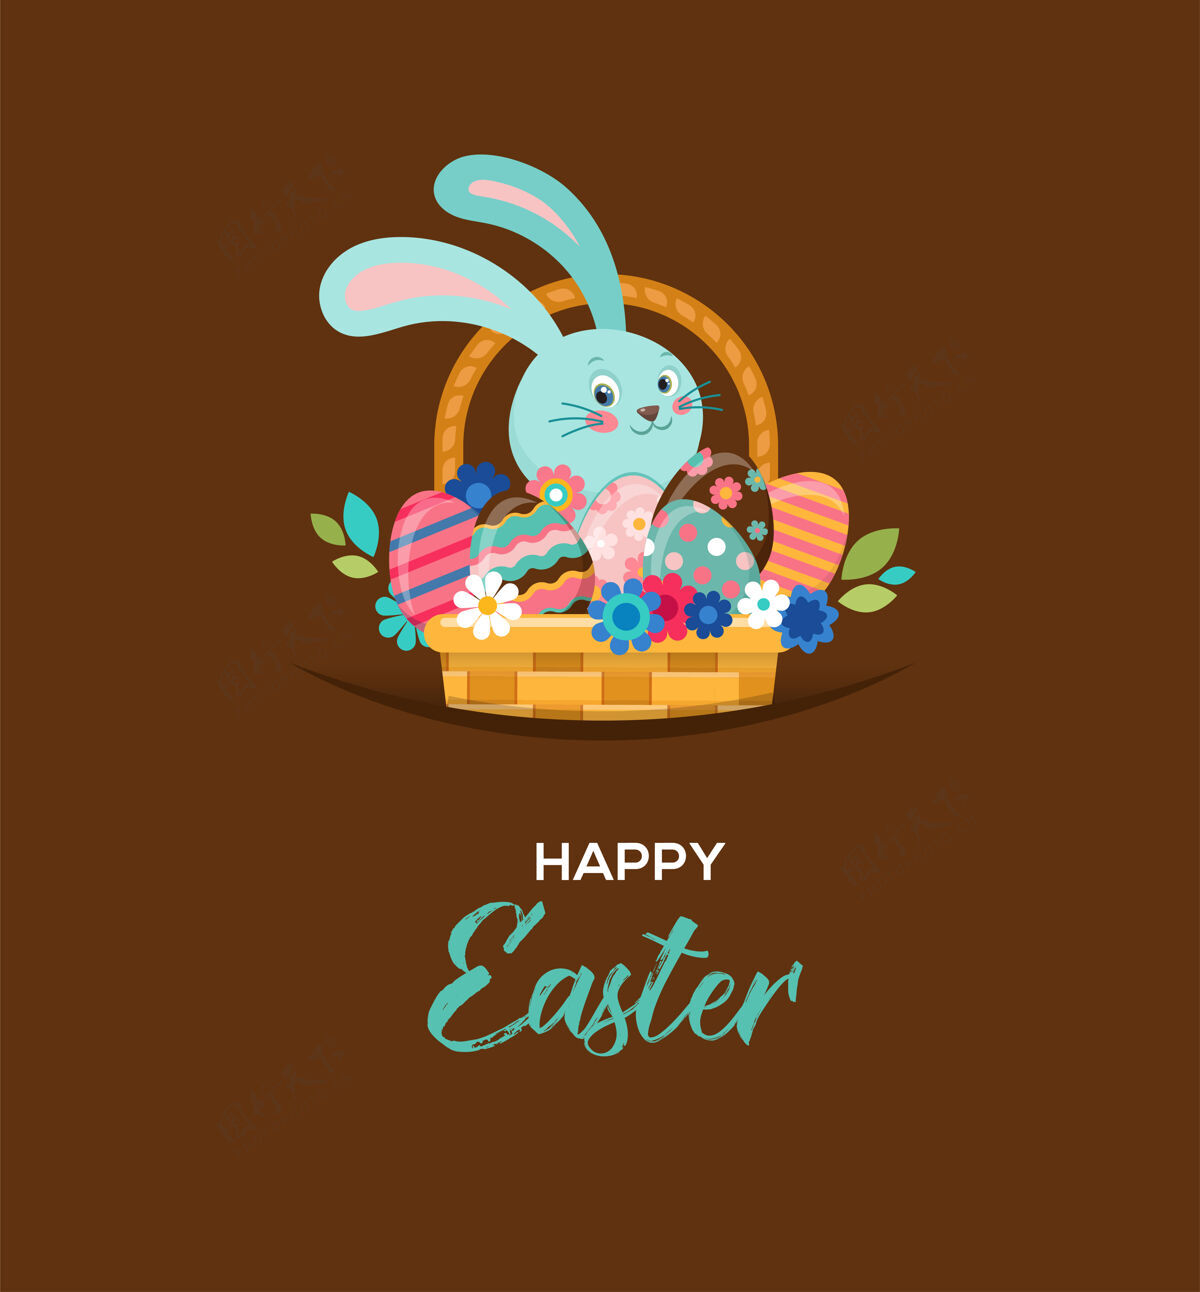 兔子复活节快乐贺卡 篮子里的兔子 鲜花和鸡蛋篮子鸡蛋复活节快乐